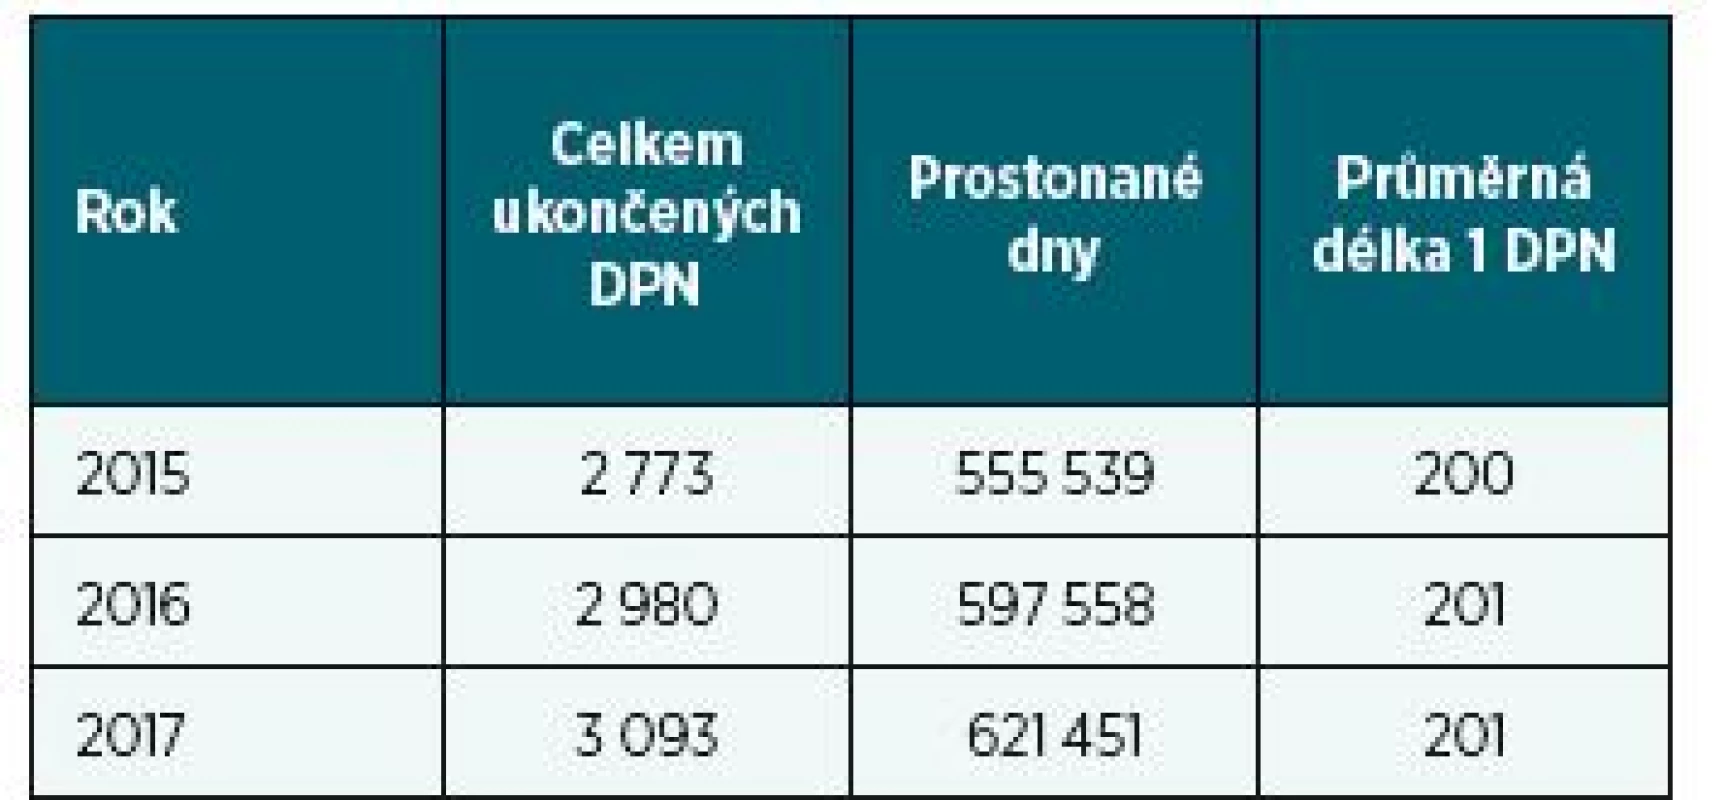 Počty ukončených případů DPN pro C50 v letech
2015–2017